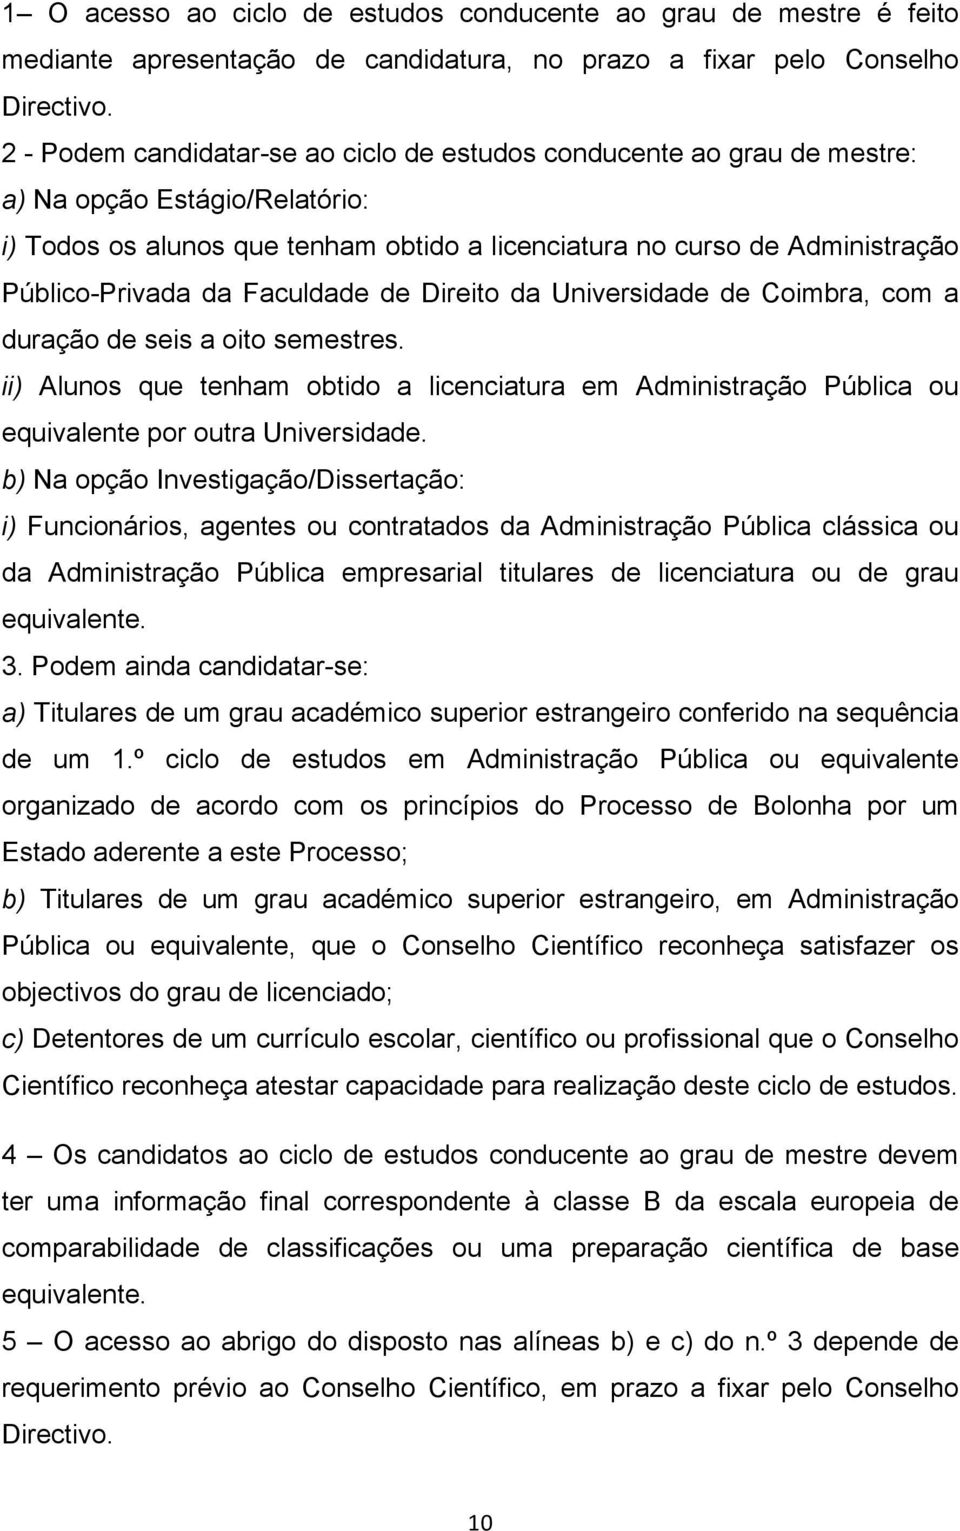 da Faculdade de Direito da Universidade de Coimbra, com a duração de seis a oito semestres. ii) Alunos que tenham obtido a licenciatura em Administração Pública ou equivalente por outra Universidade.